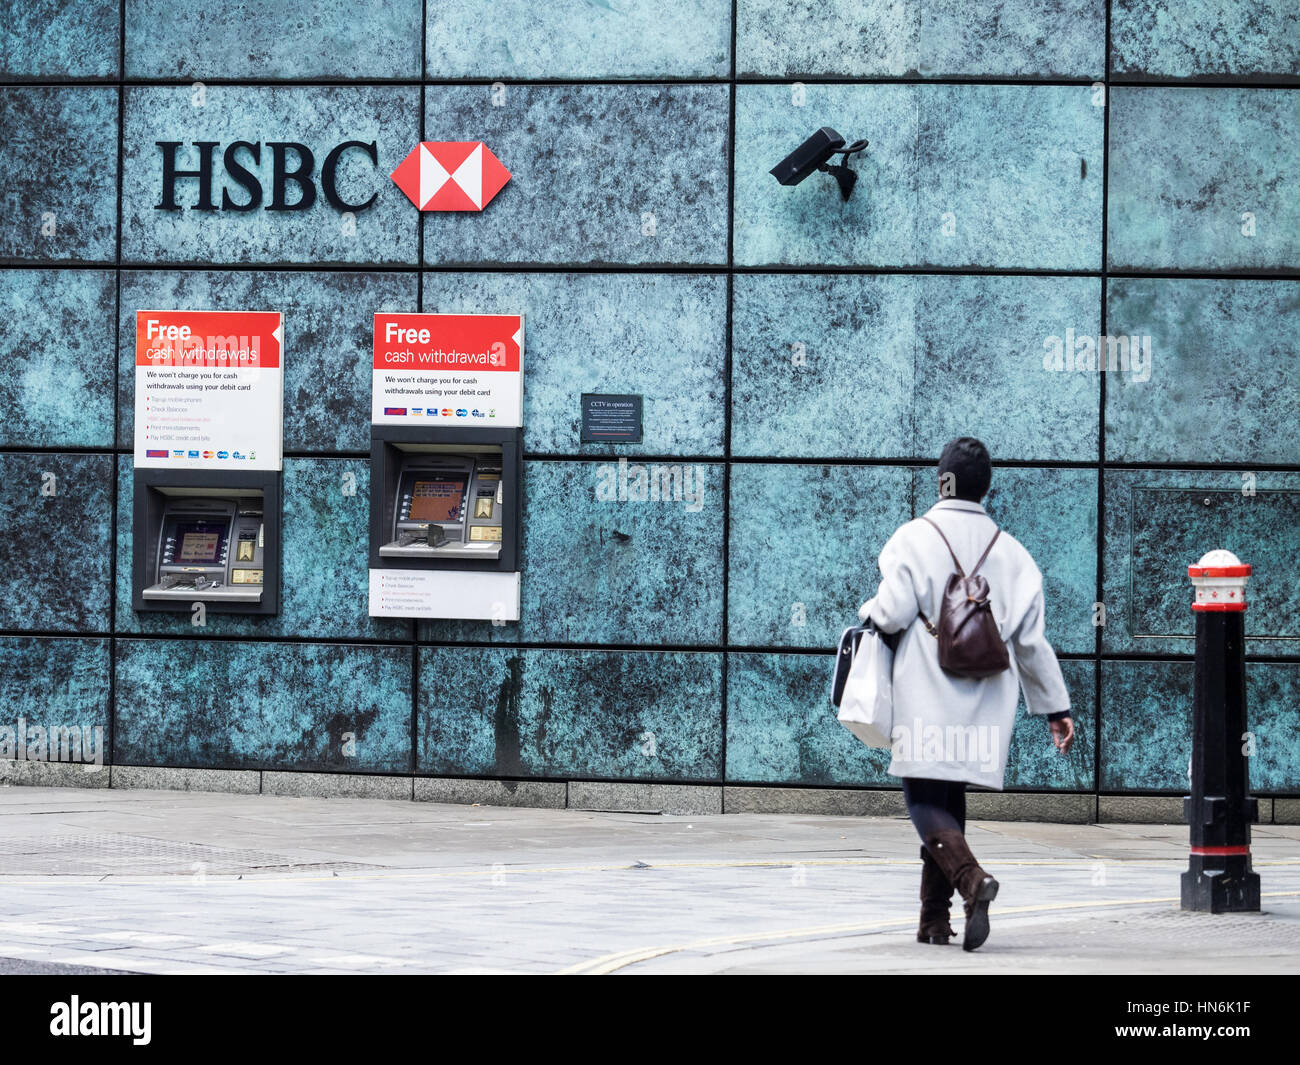 Des distributeurs automatiques de billets HSBC Londres - une femme marche vers les distributeurs HSBC dans le centre de Londres avec les caméras de surveillance de la DAB. Banque D'Images